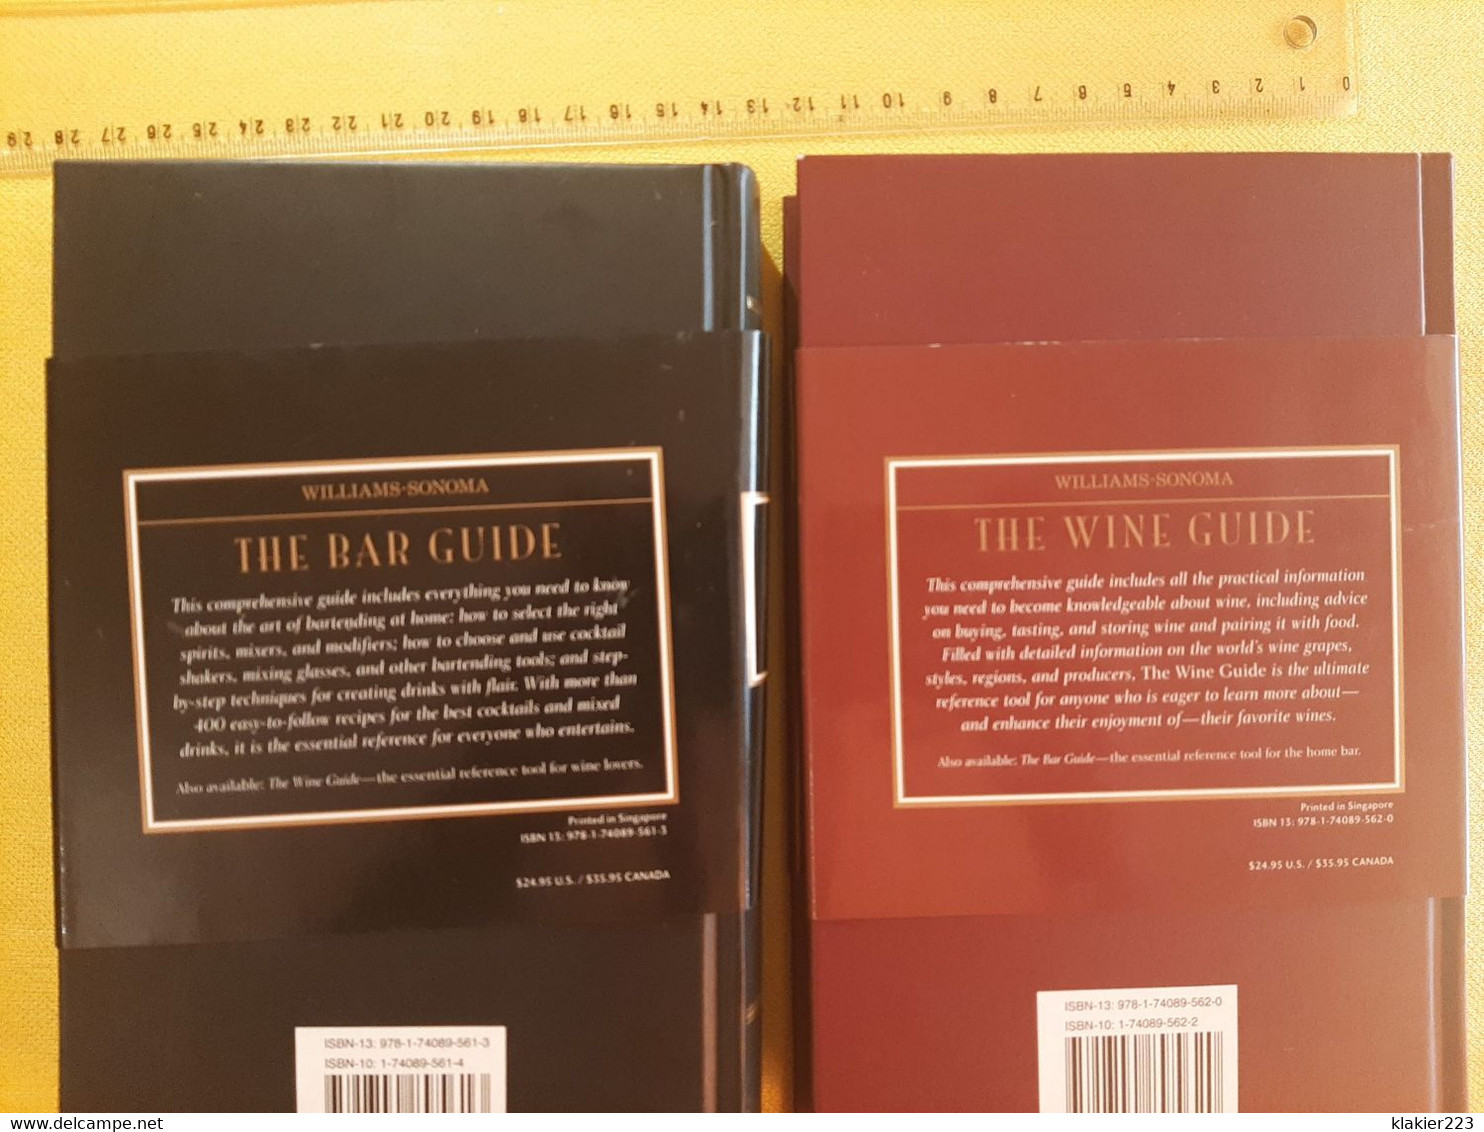 Williams-Sonoma - The Bar Guide / The Wine Guide - Europa